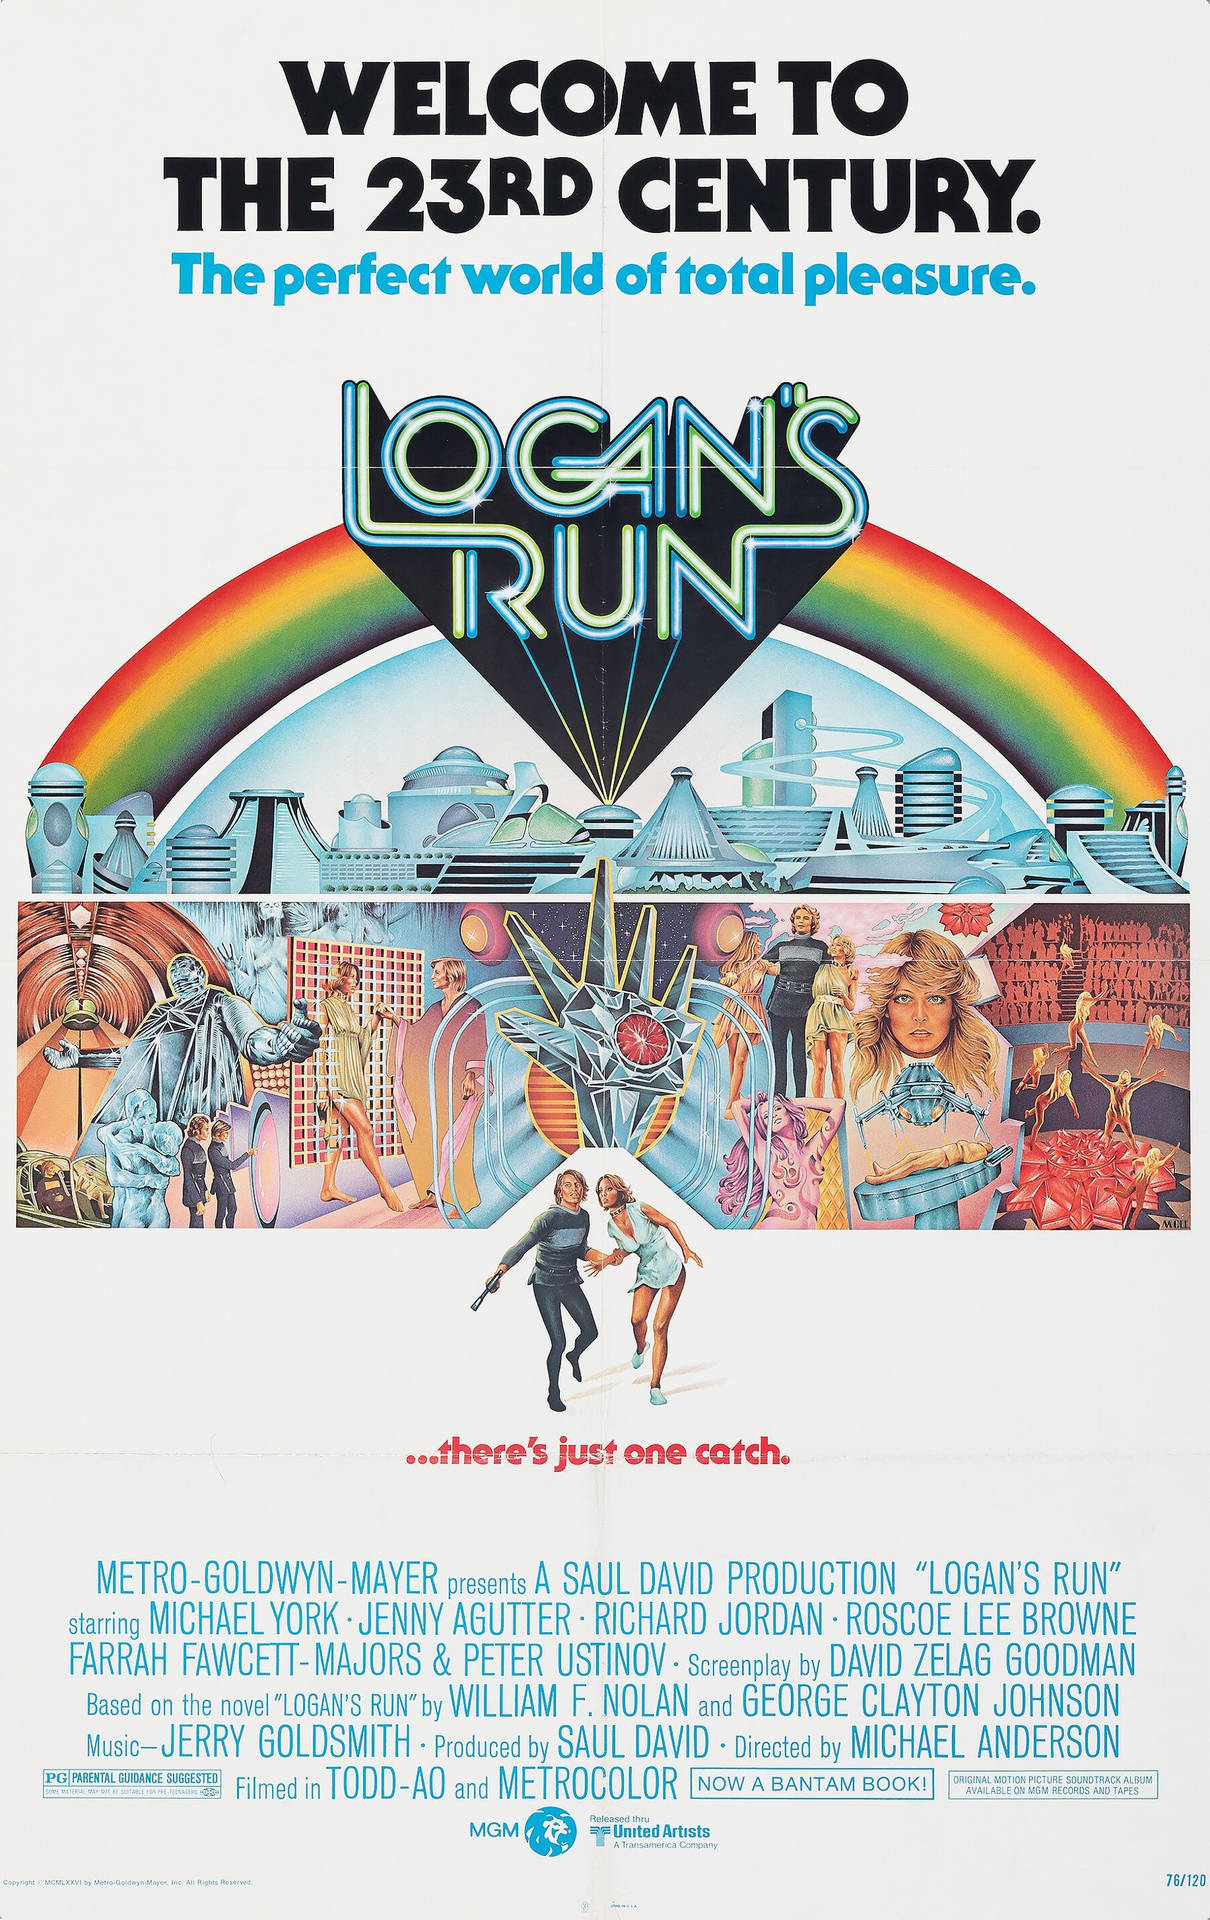 Michael York in Logan's Run Film Poster Wallpaper